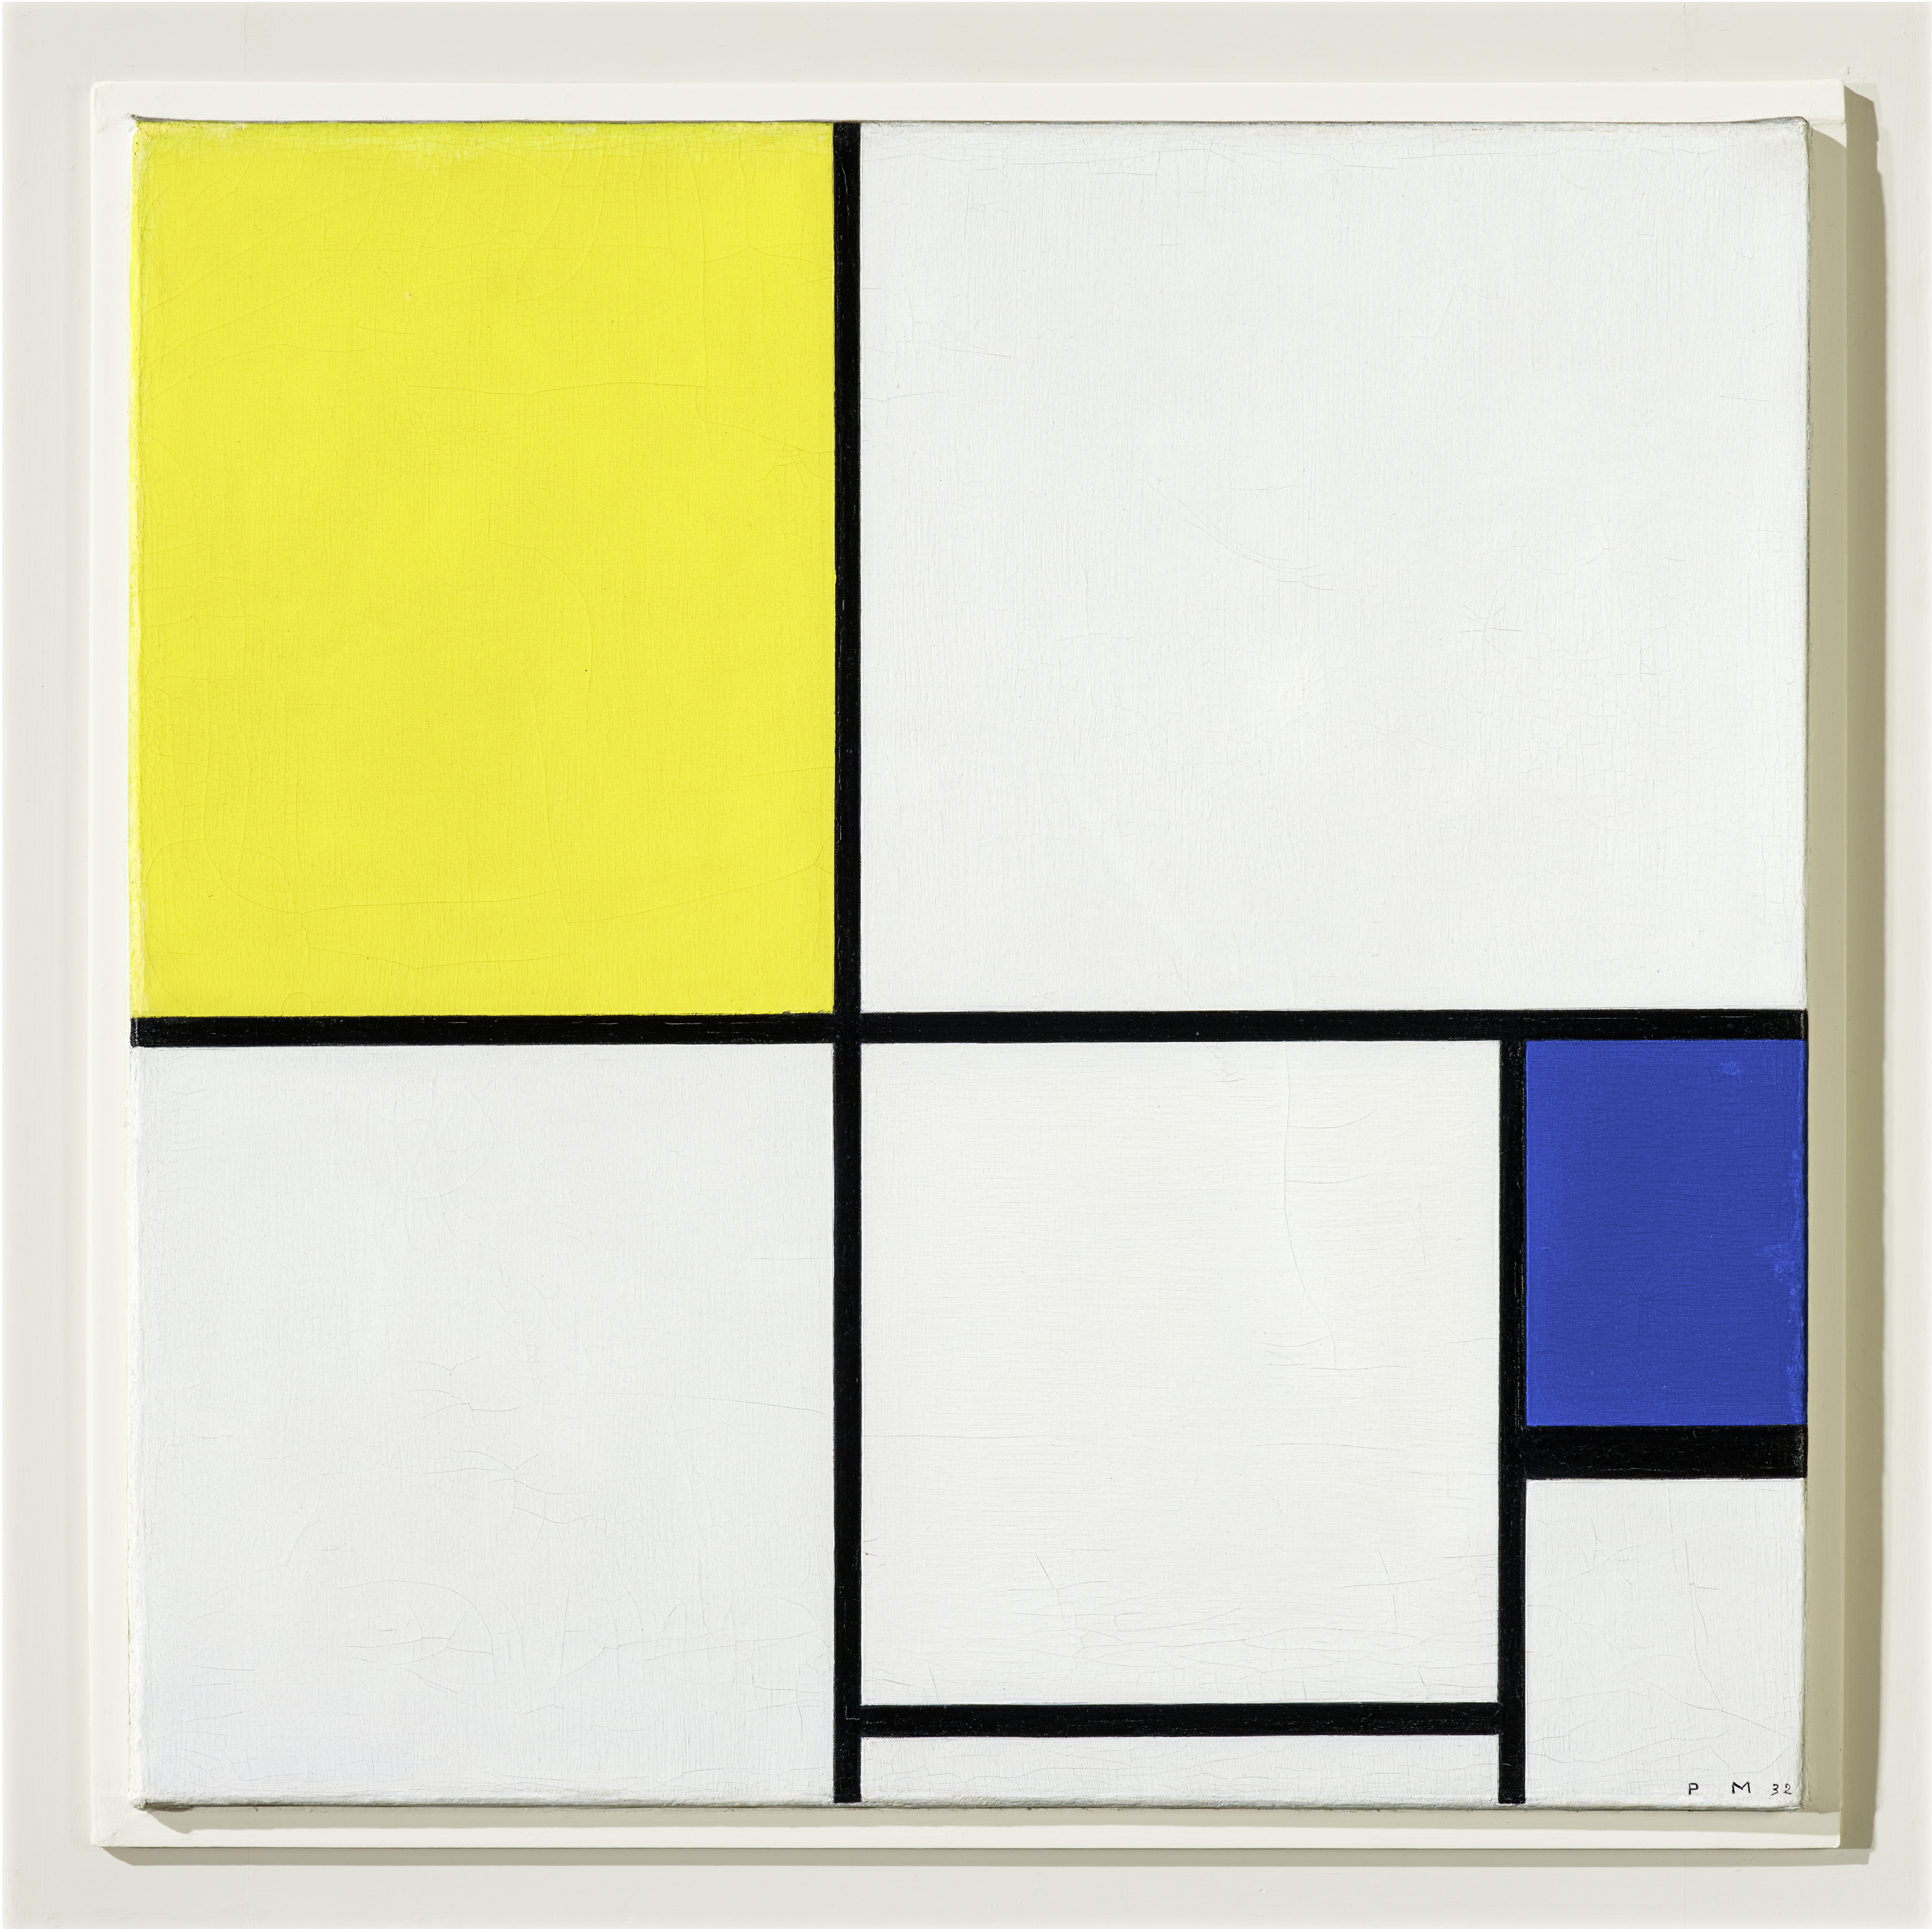 Piet Mondrian, “Composizione con giallo e blu”, 1932